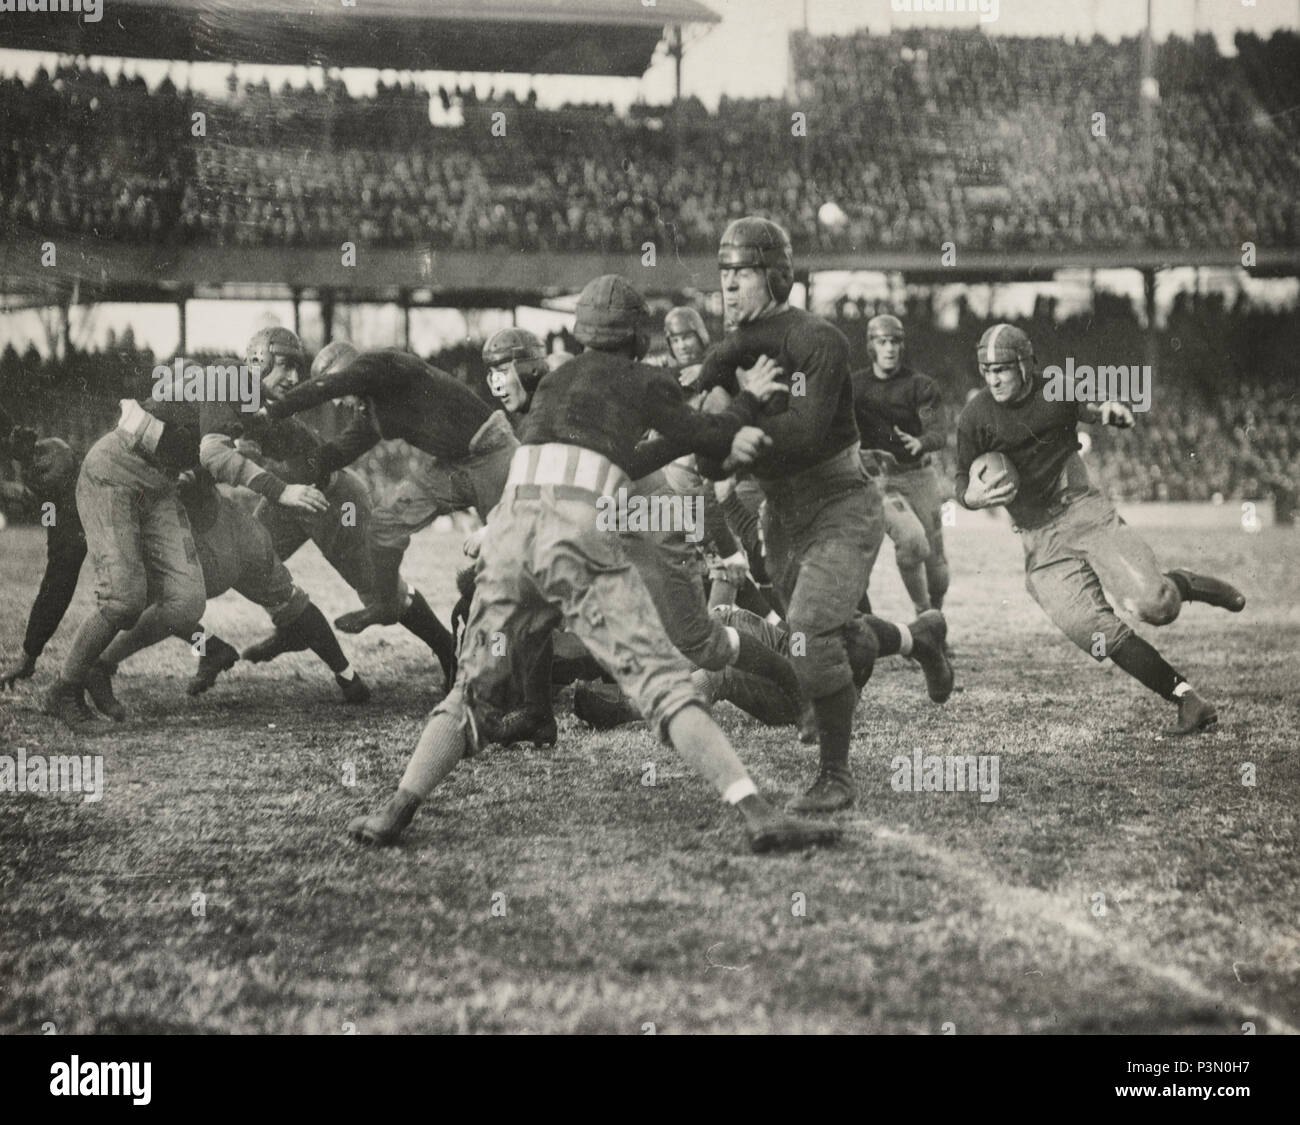 An American Football game, circa 1920 Stock Photo